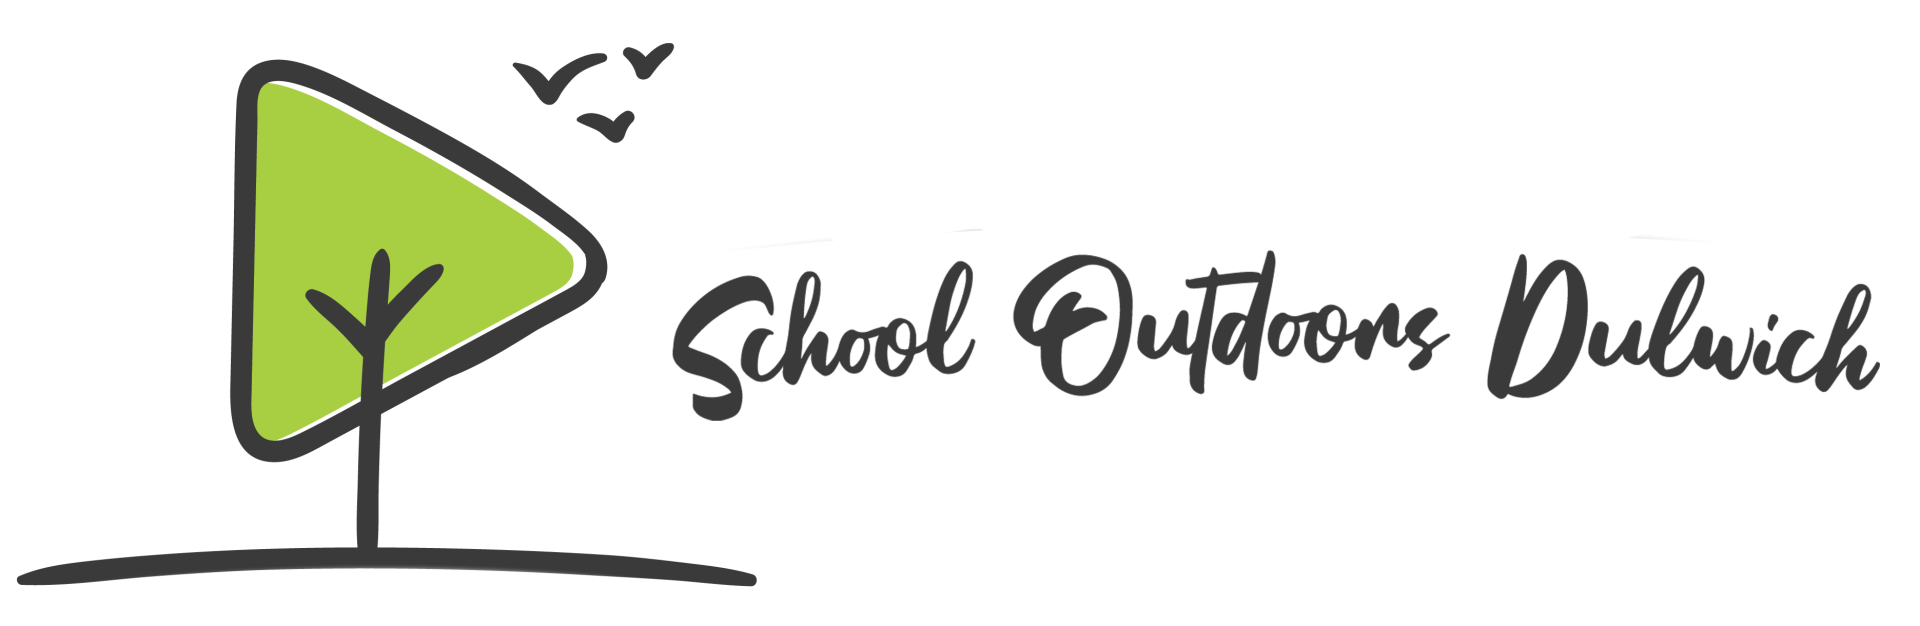 School Outdoors Dulwich, School Outdoors, Forest school, Nursery, Education